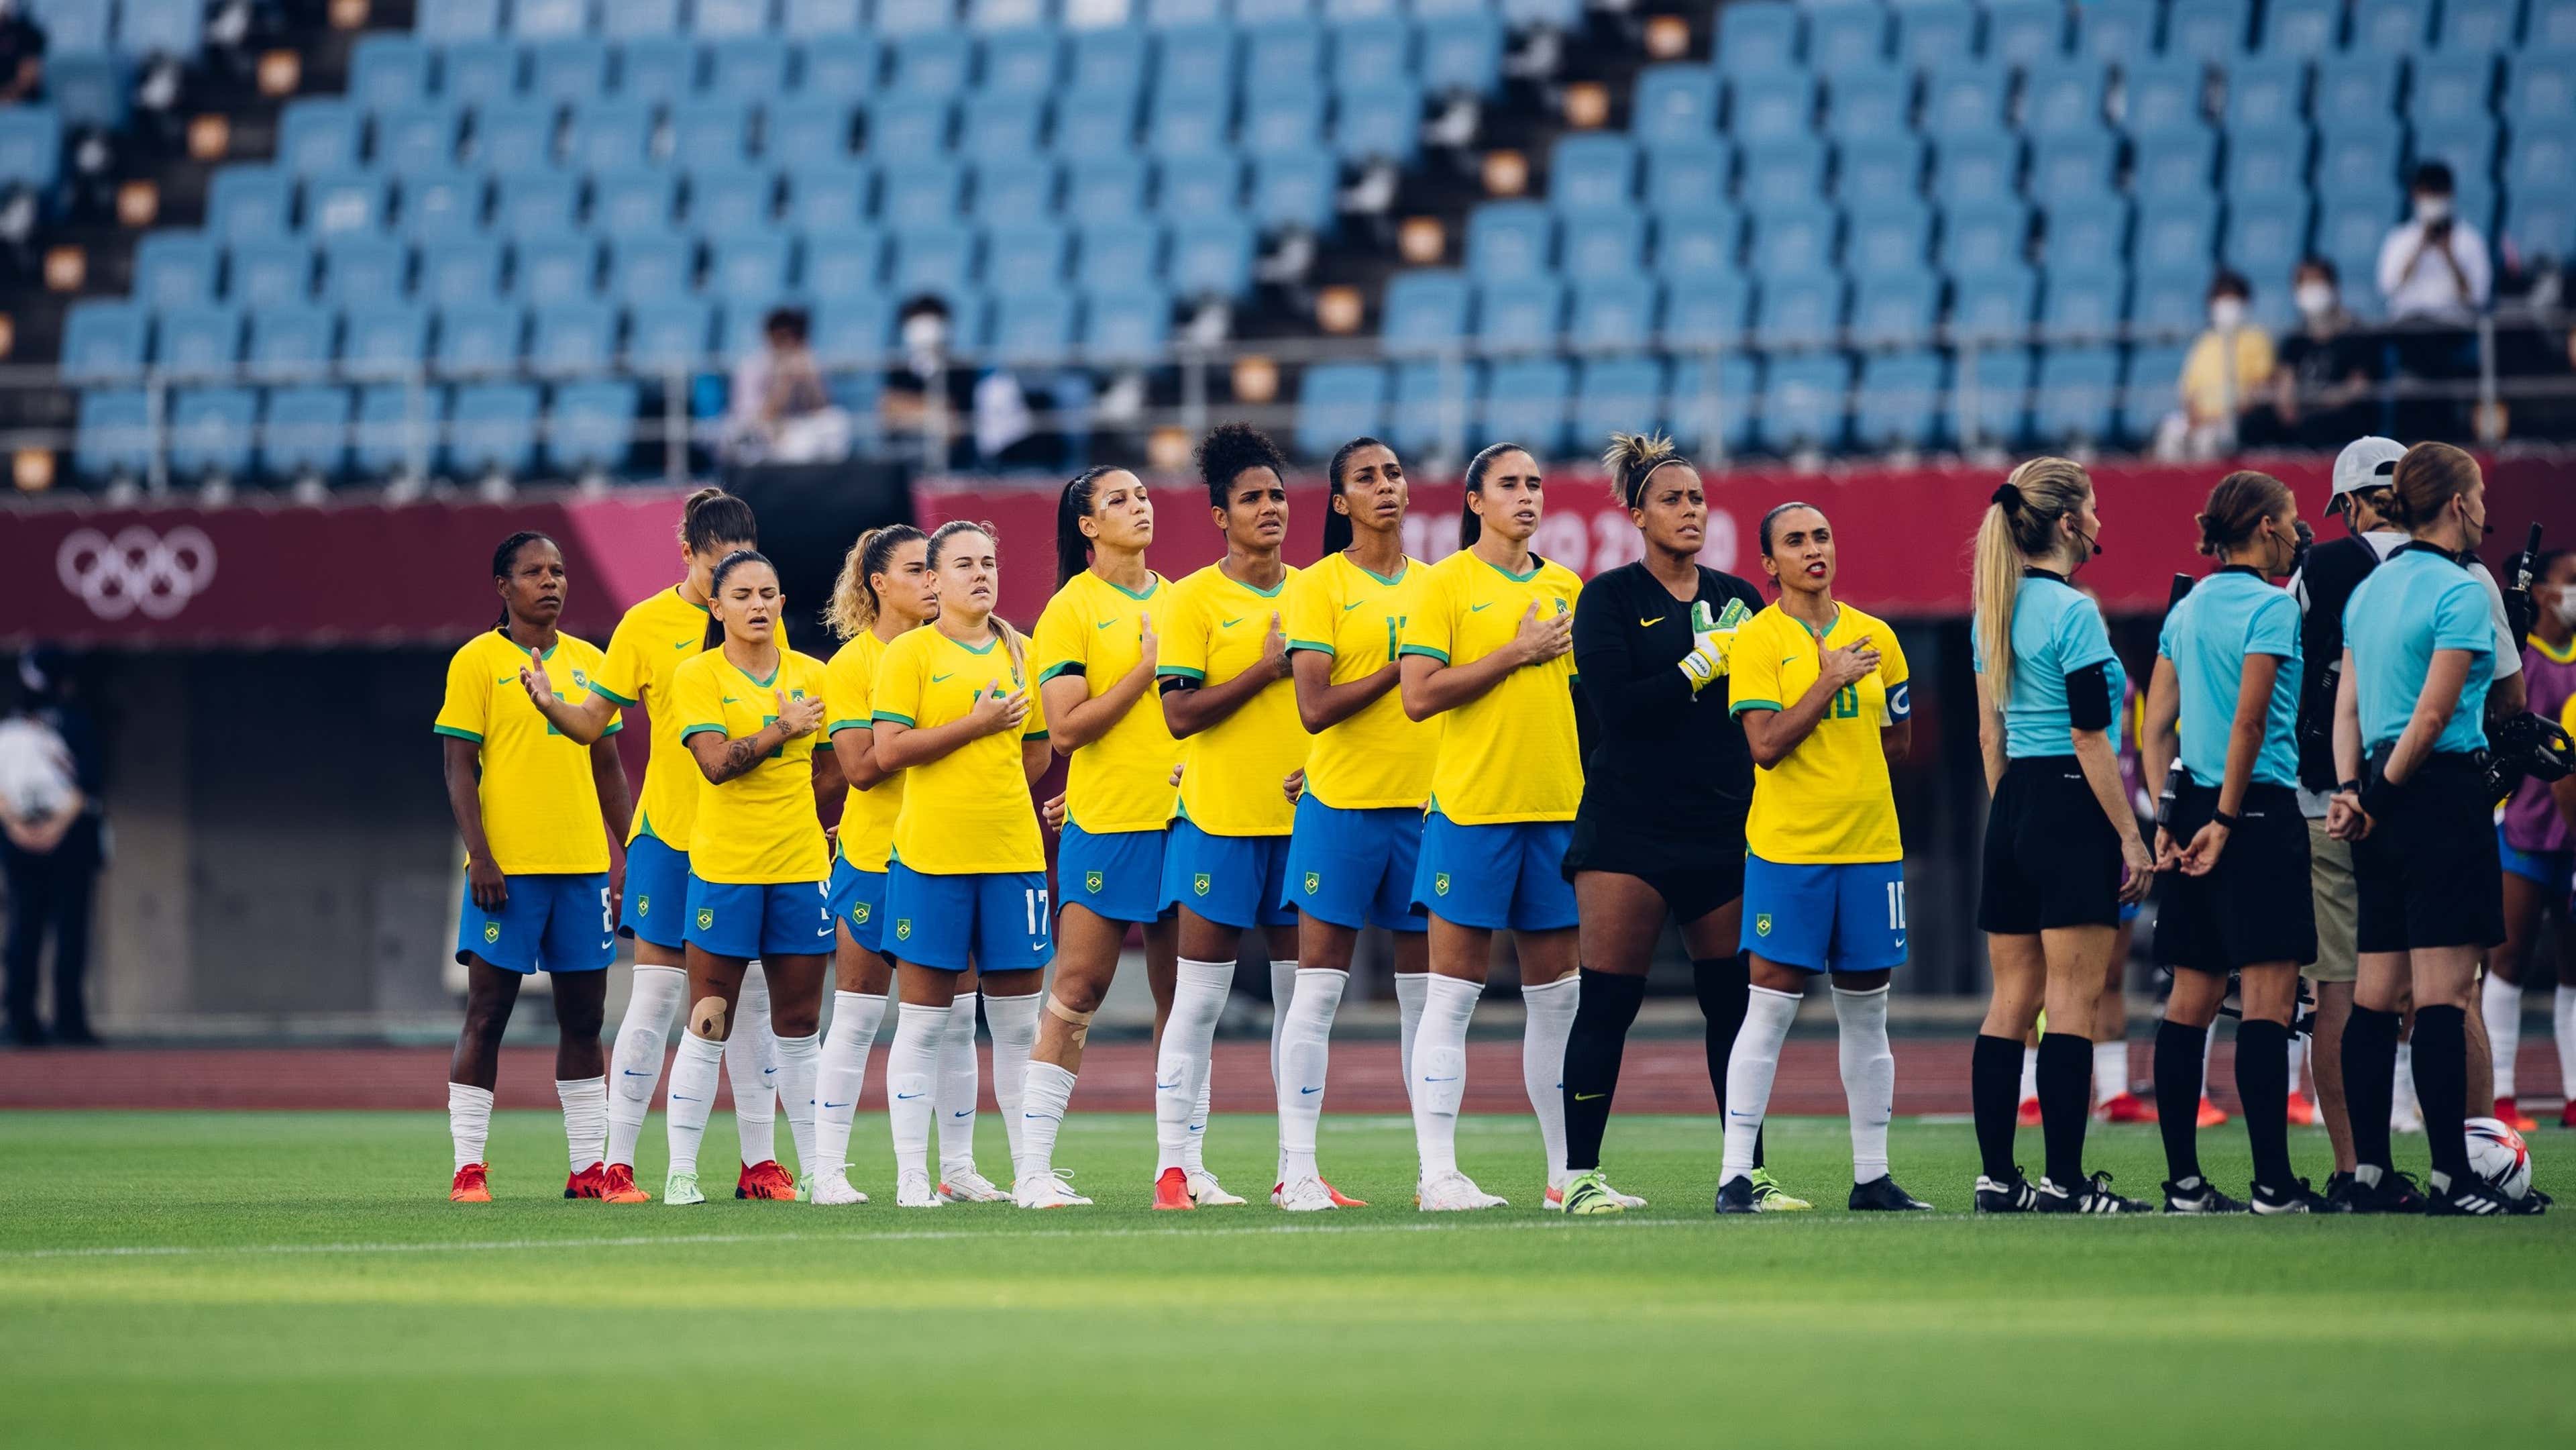 Brasil x Chile ao vivo: onde assistir à transmissão do jogo da seleção